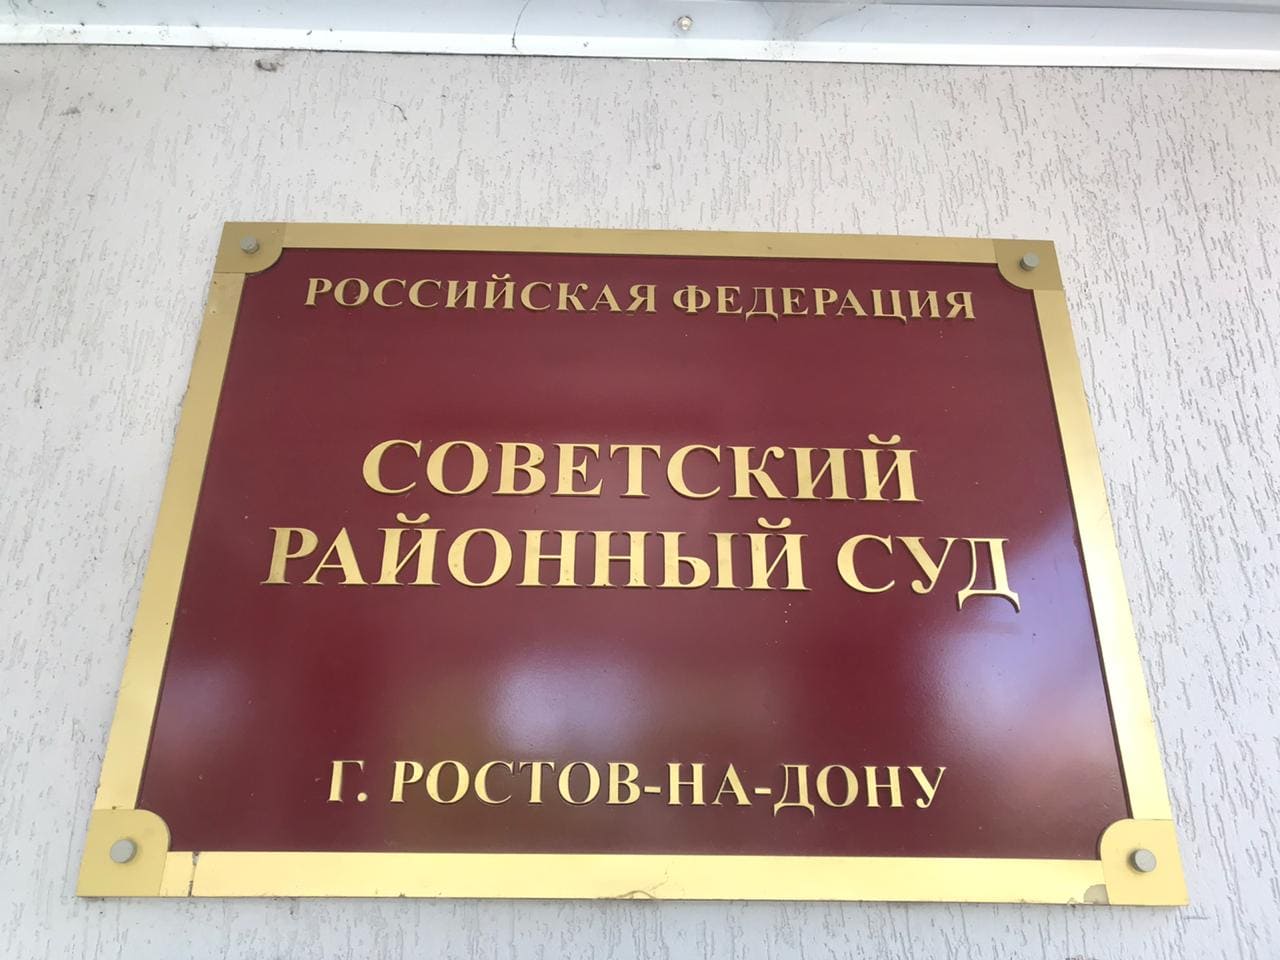 В Ростове-на-Дону вынесли обвинительный приговор «целительнице»